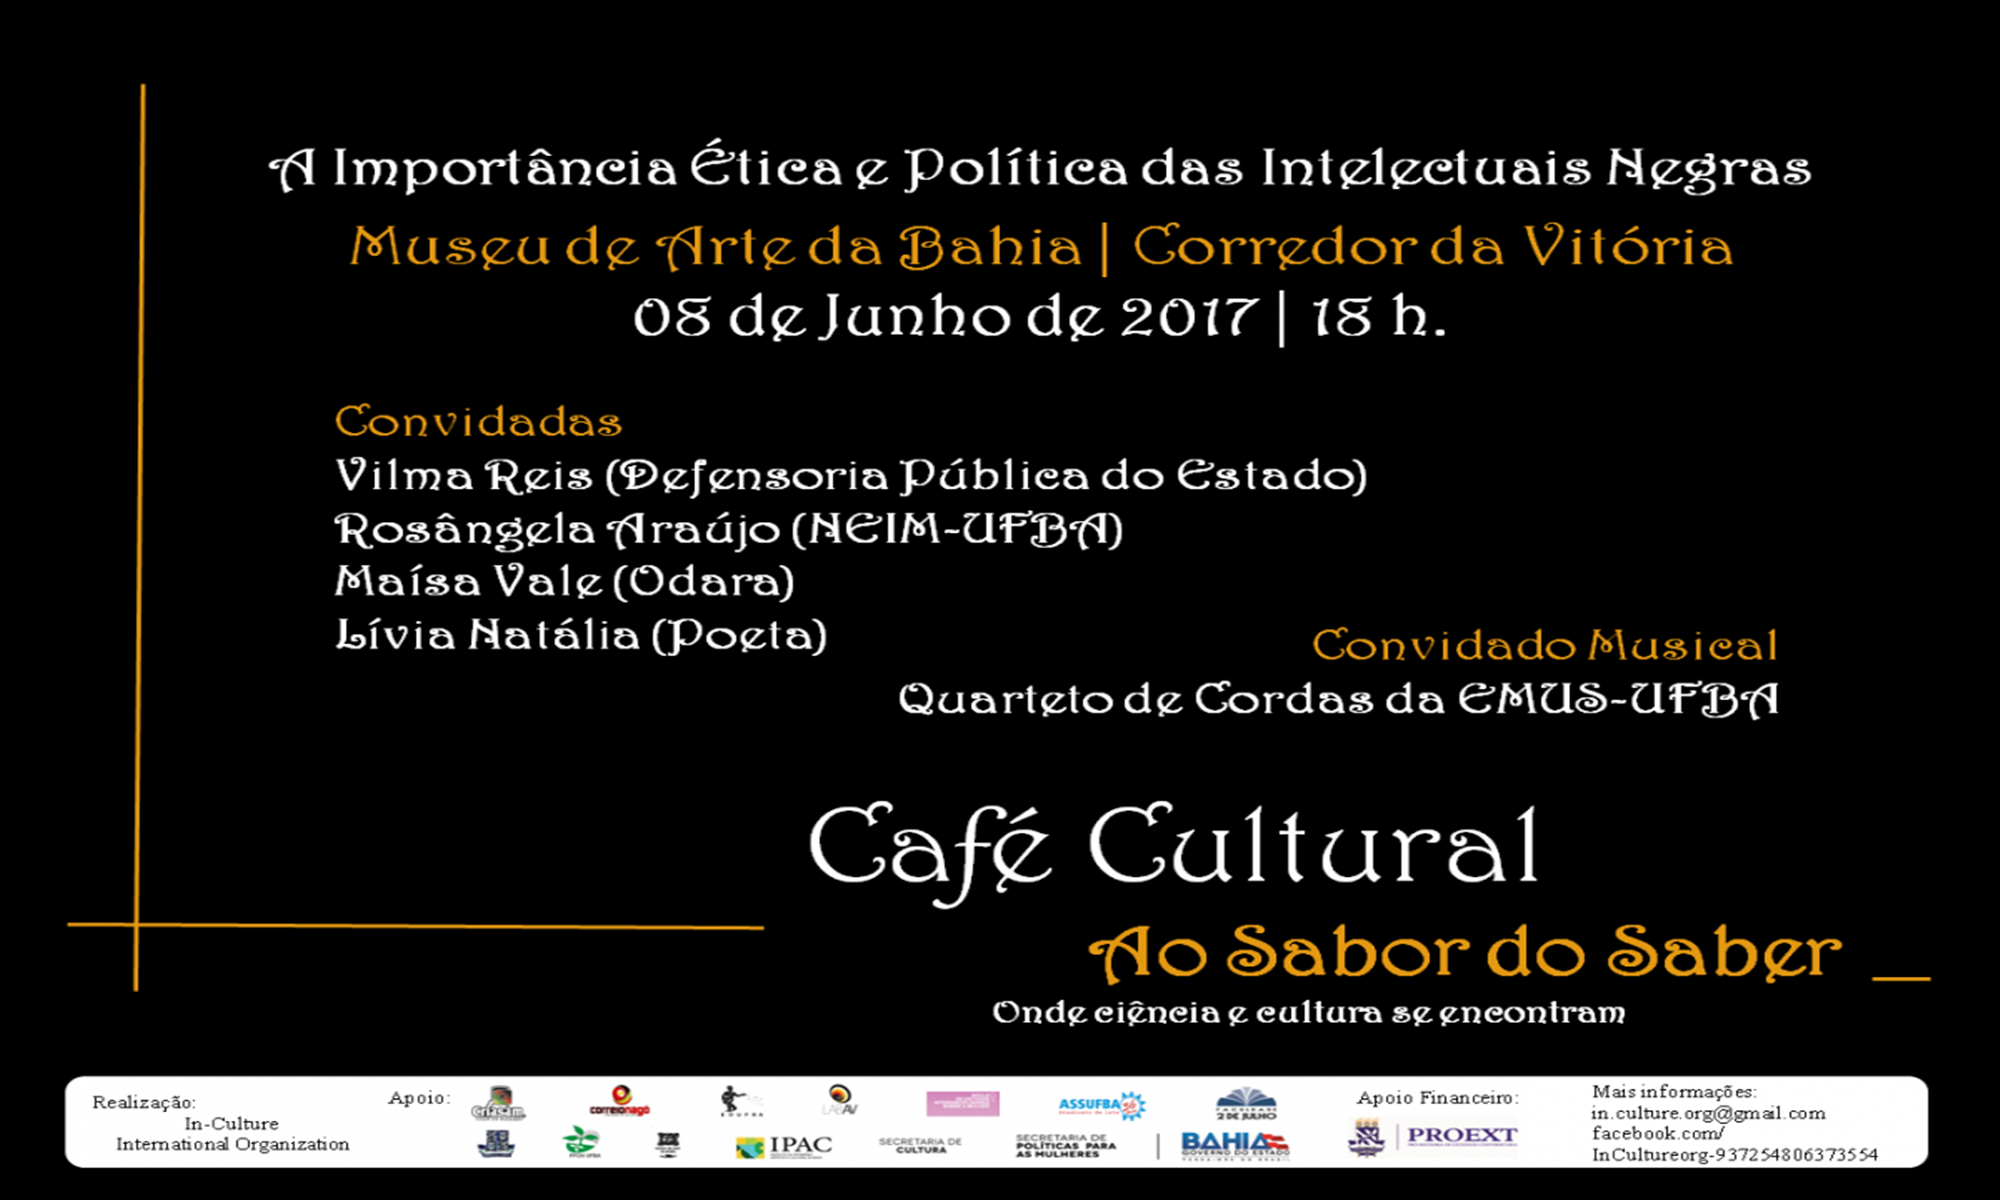 Com a participação  da UFBA, Museu de Arte da Bahia promove o evento "A Importância Ética e Política das Intelectuais Negras"